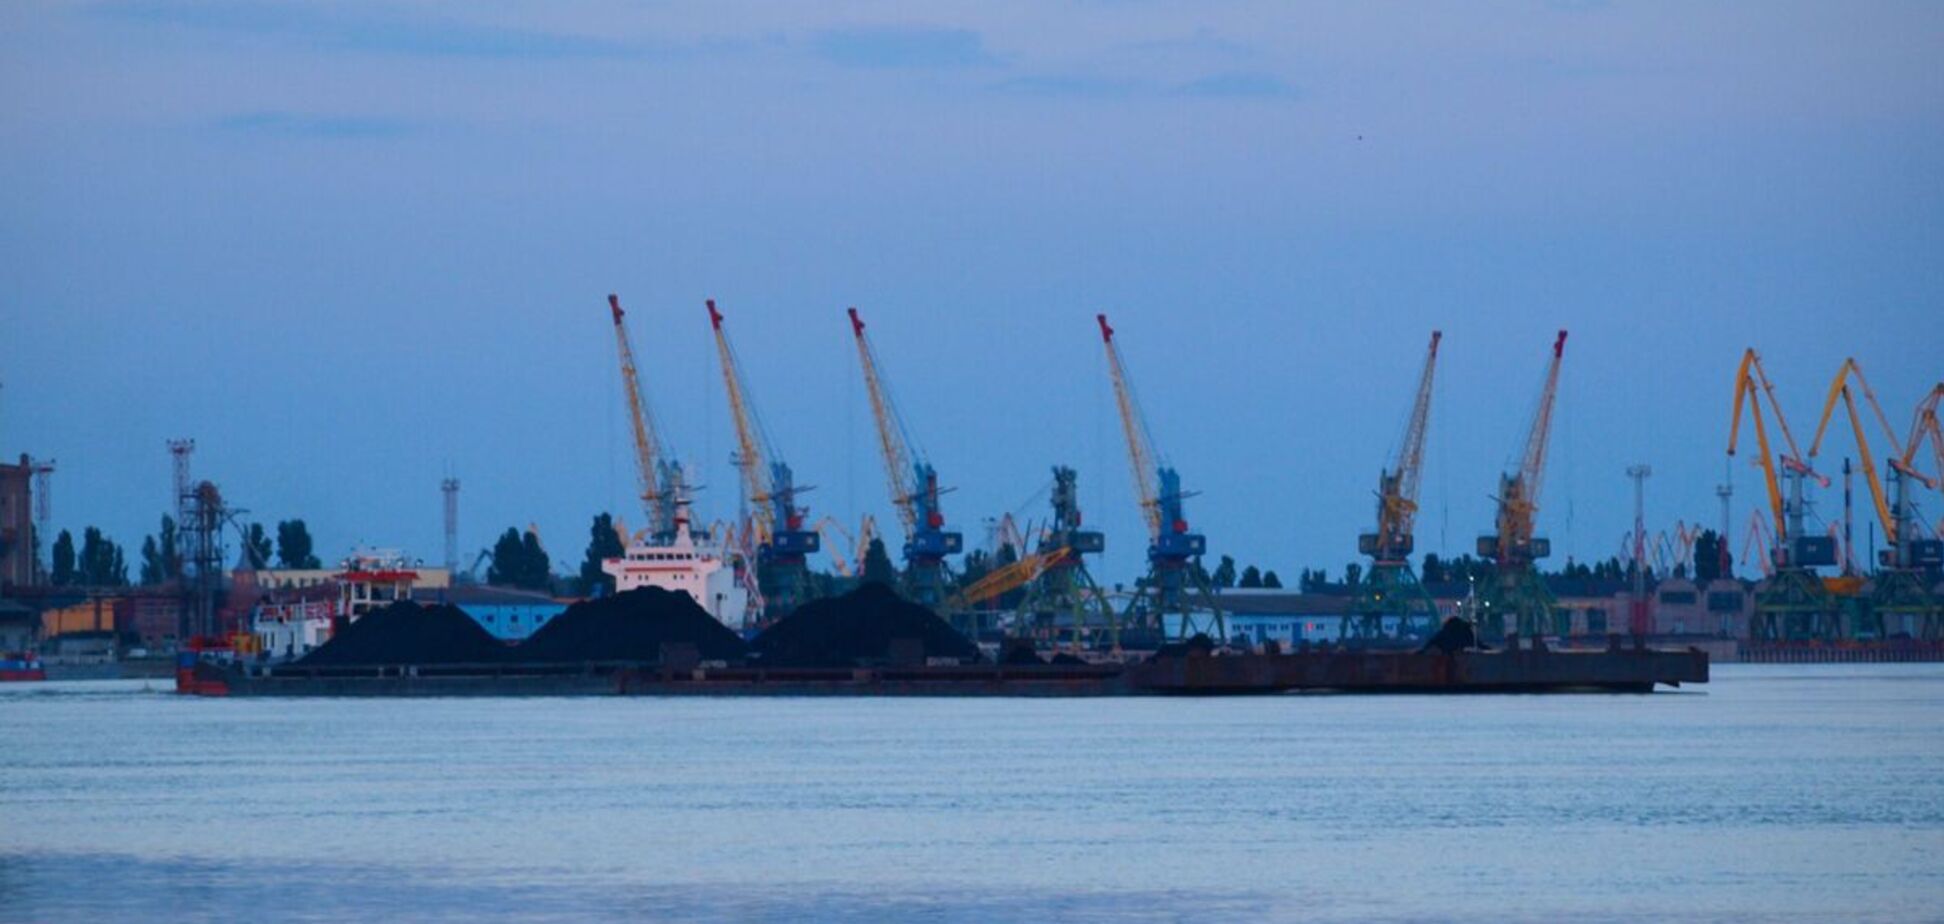 Після завершення зернової угоди потрібно повністю розблокувати морські порти, – Каленков